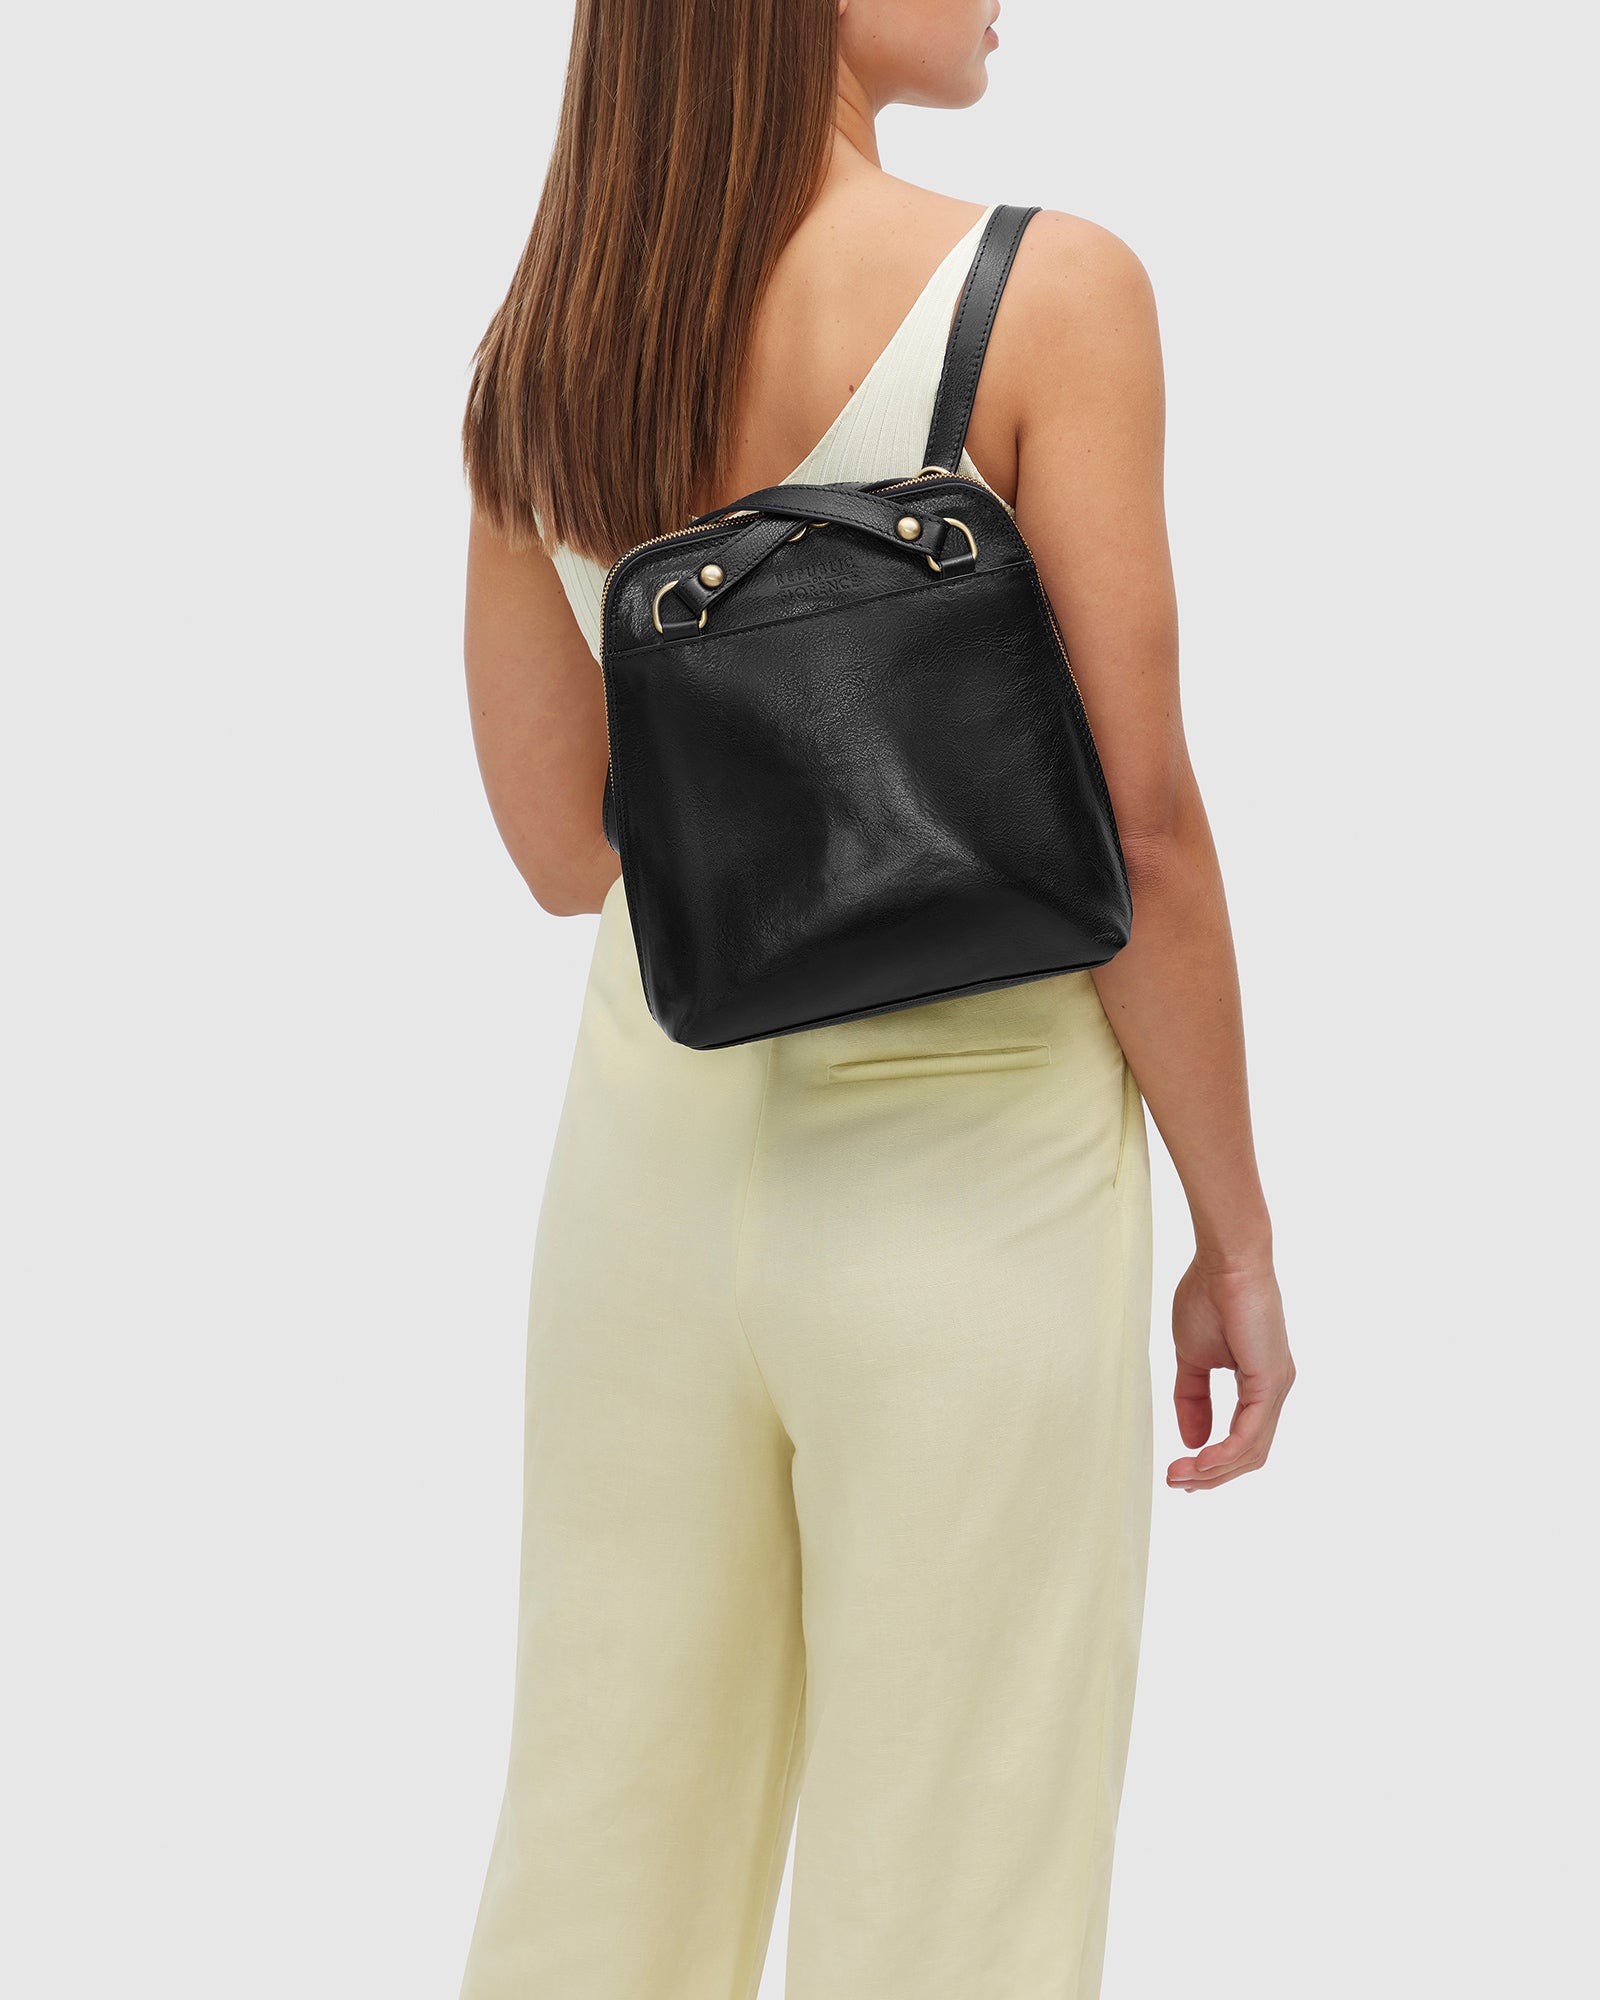 Ruby Black - Backpack / Shoulder Bag